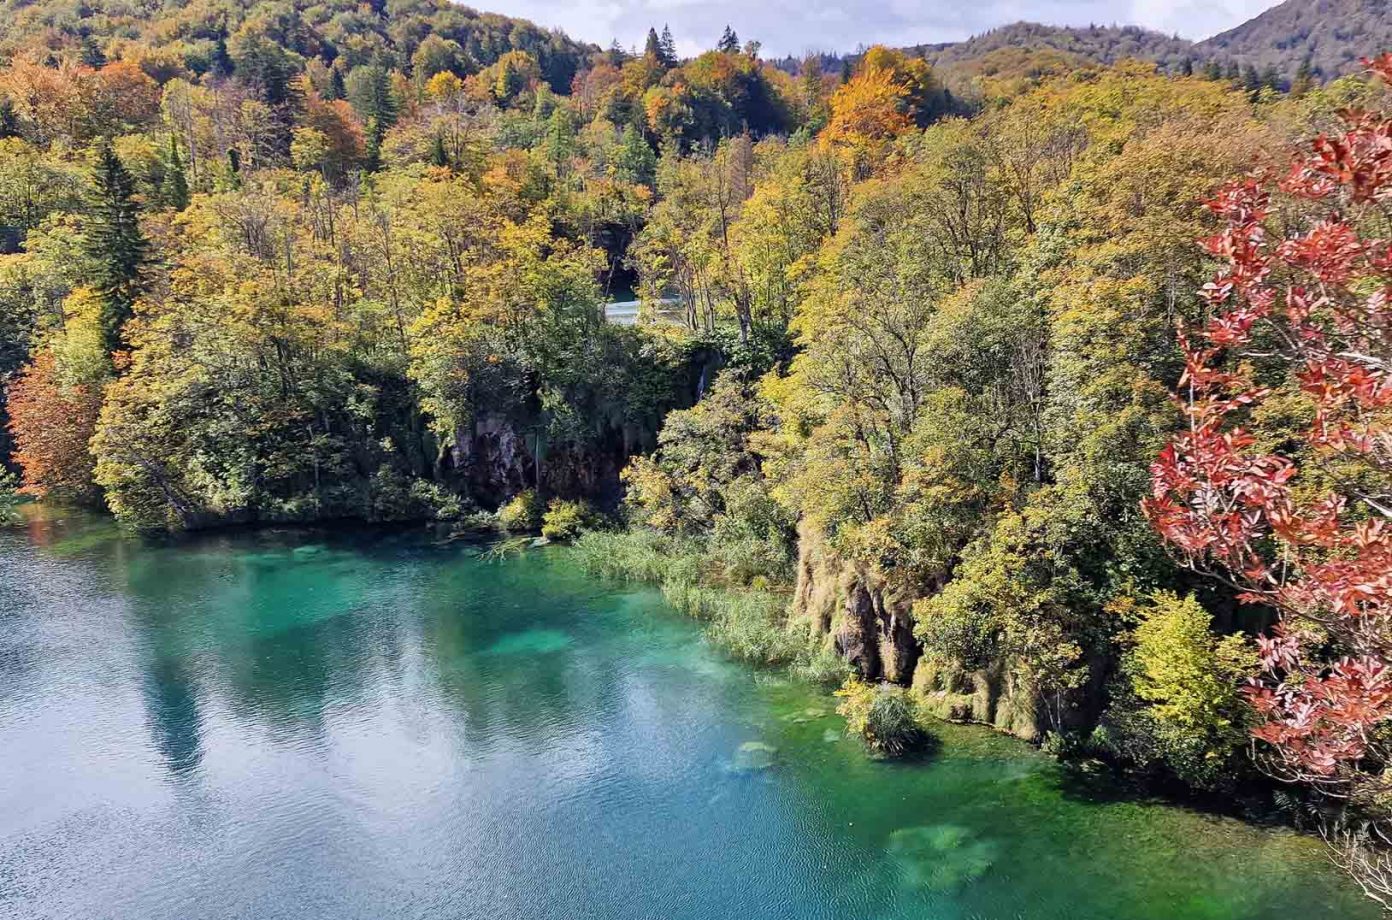 Choáng ngợp vẻ đẹp mùa Thu ở vườn quốc gia Plitvice, Croatia - 7